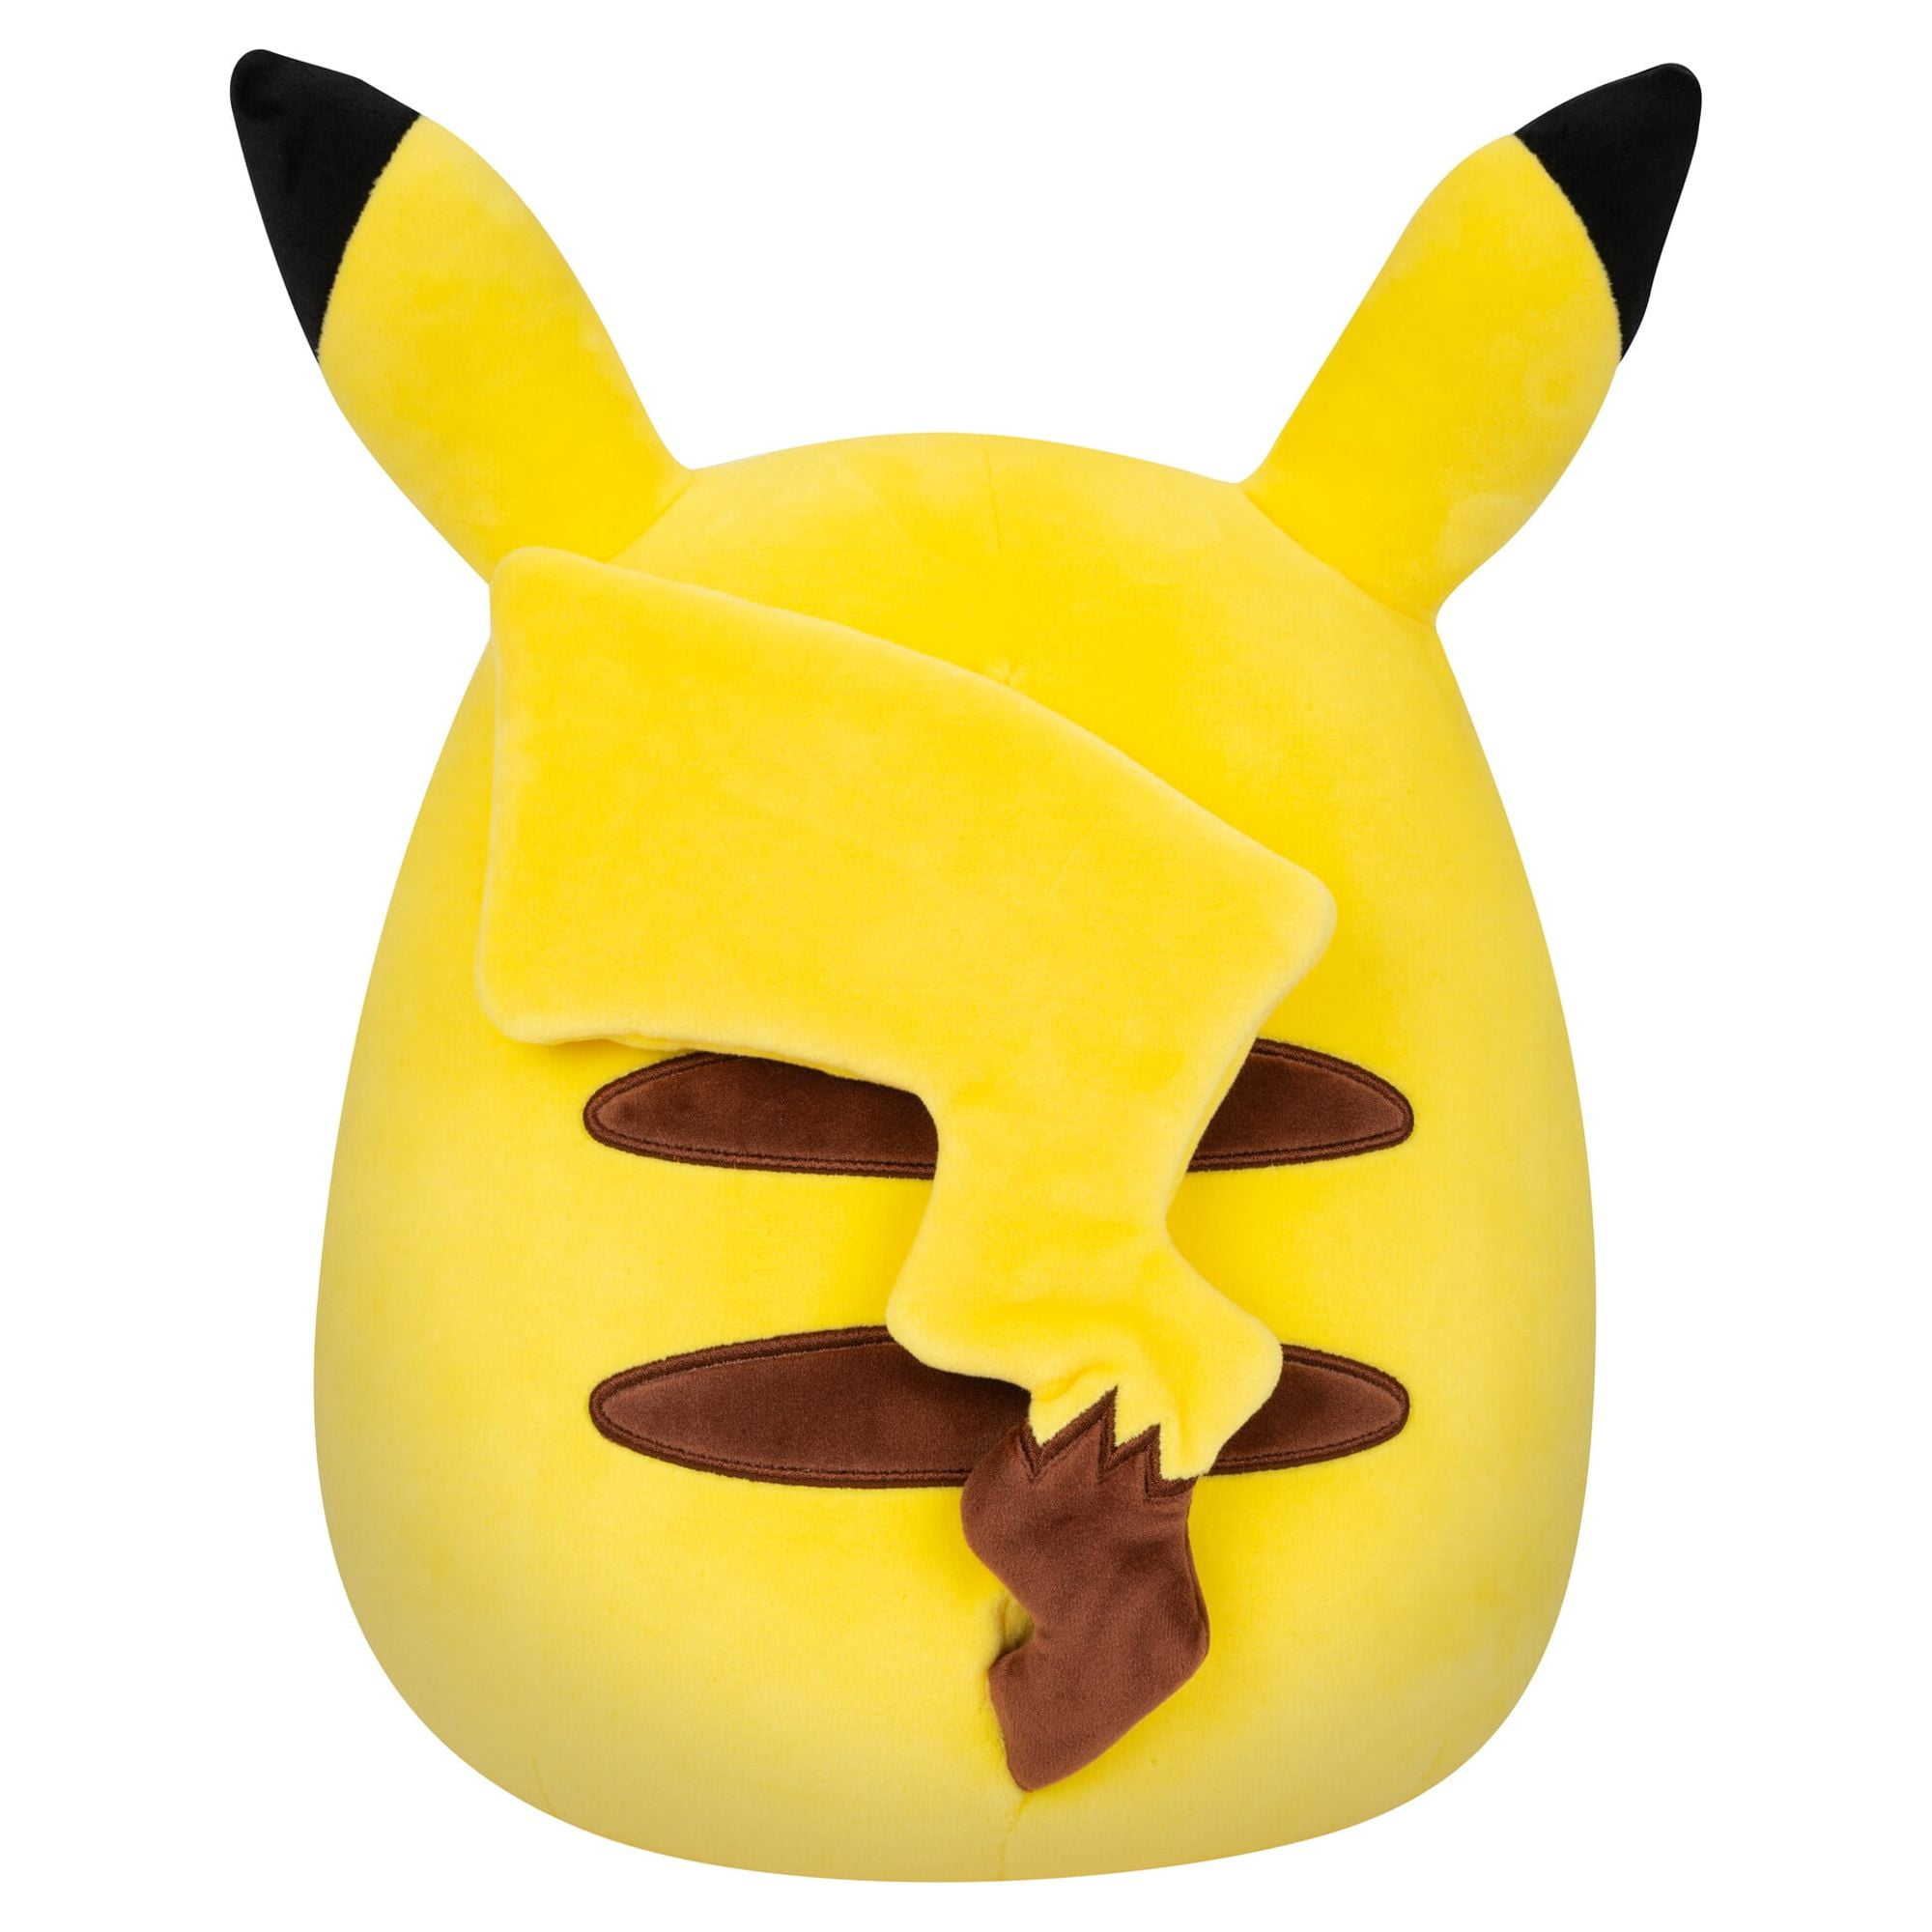 Pokemon pikachu lv X 61